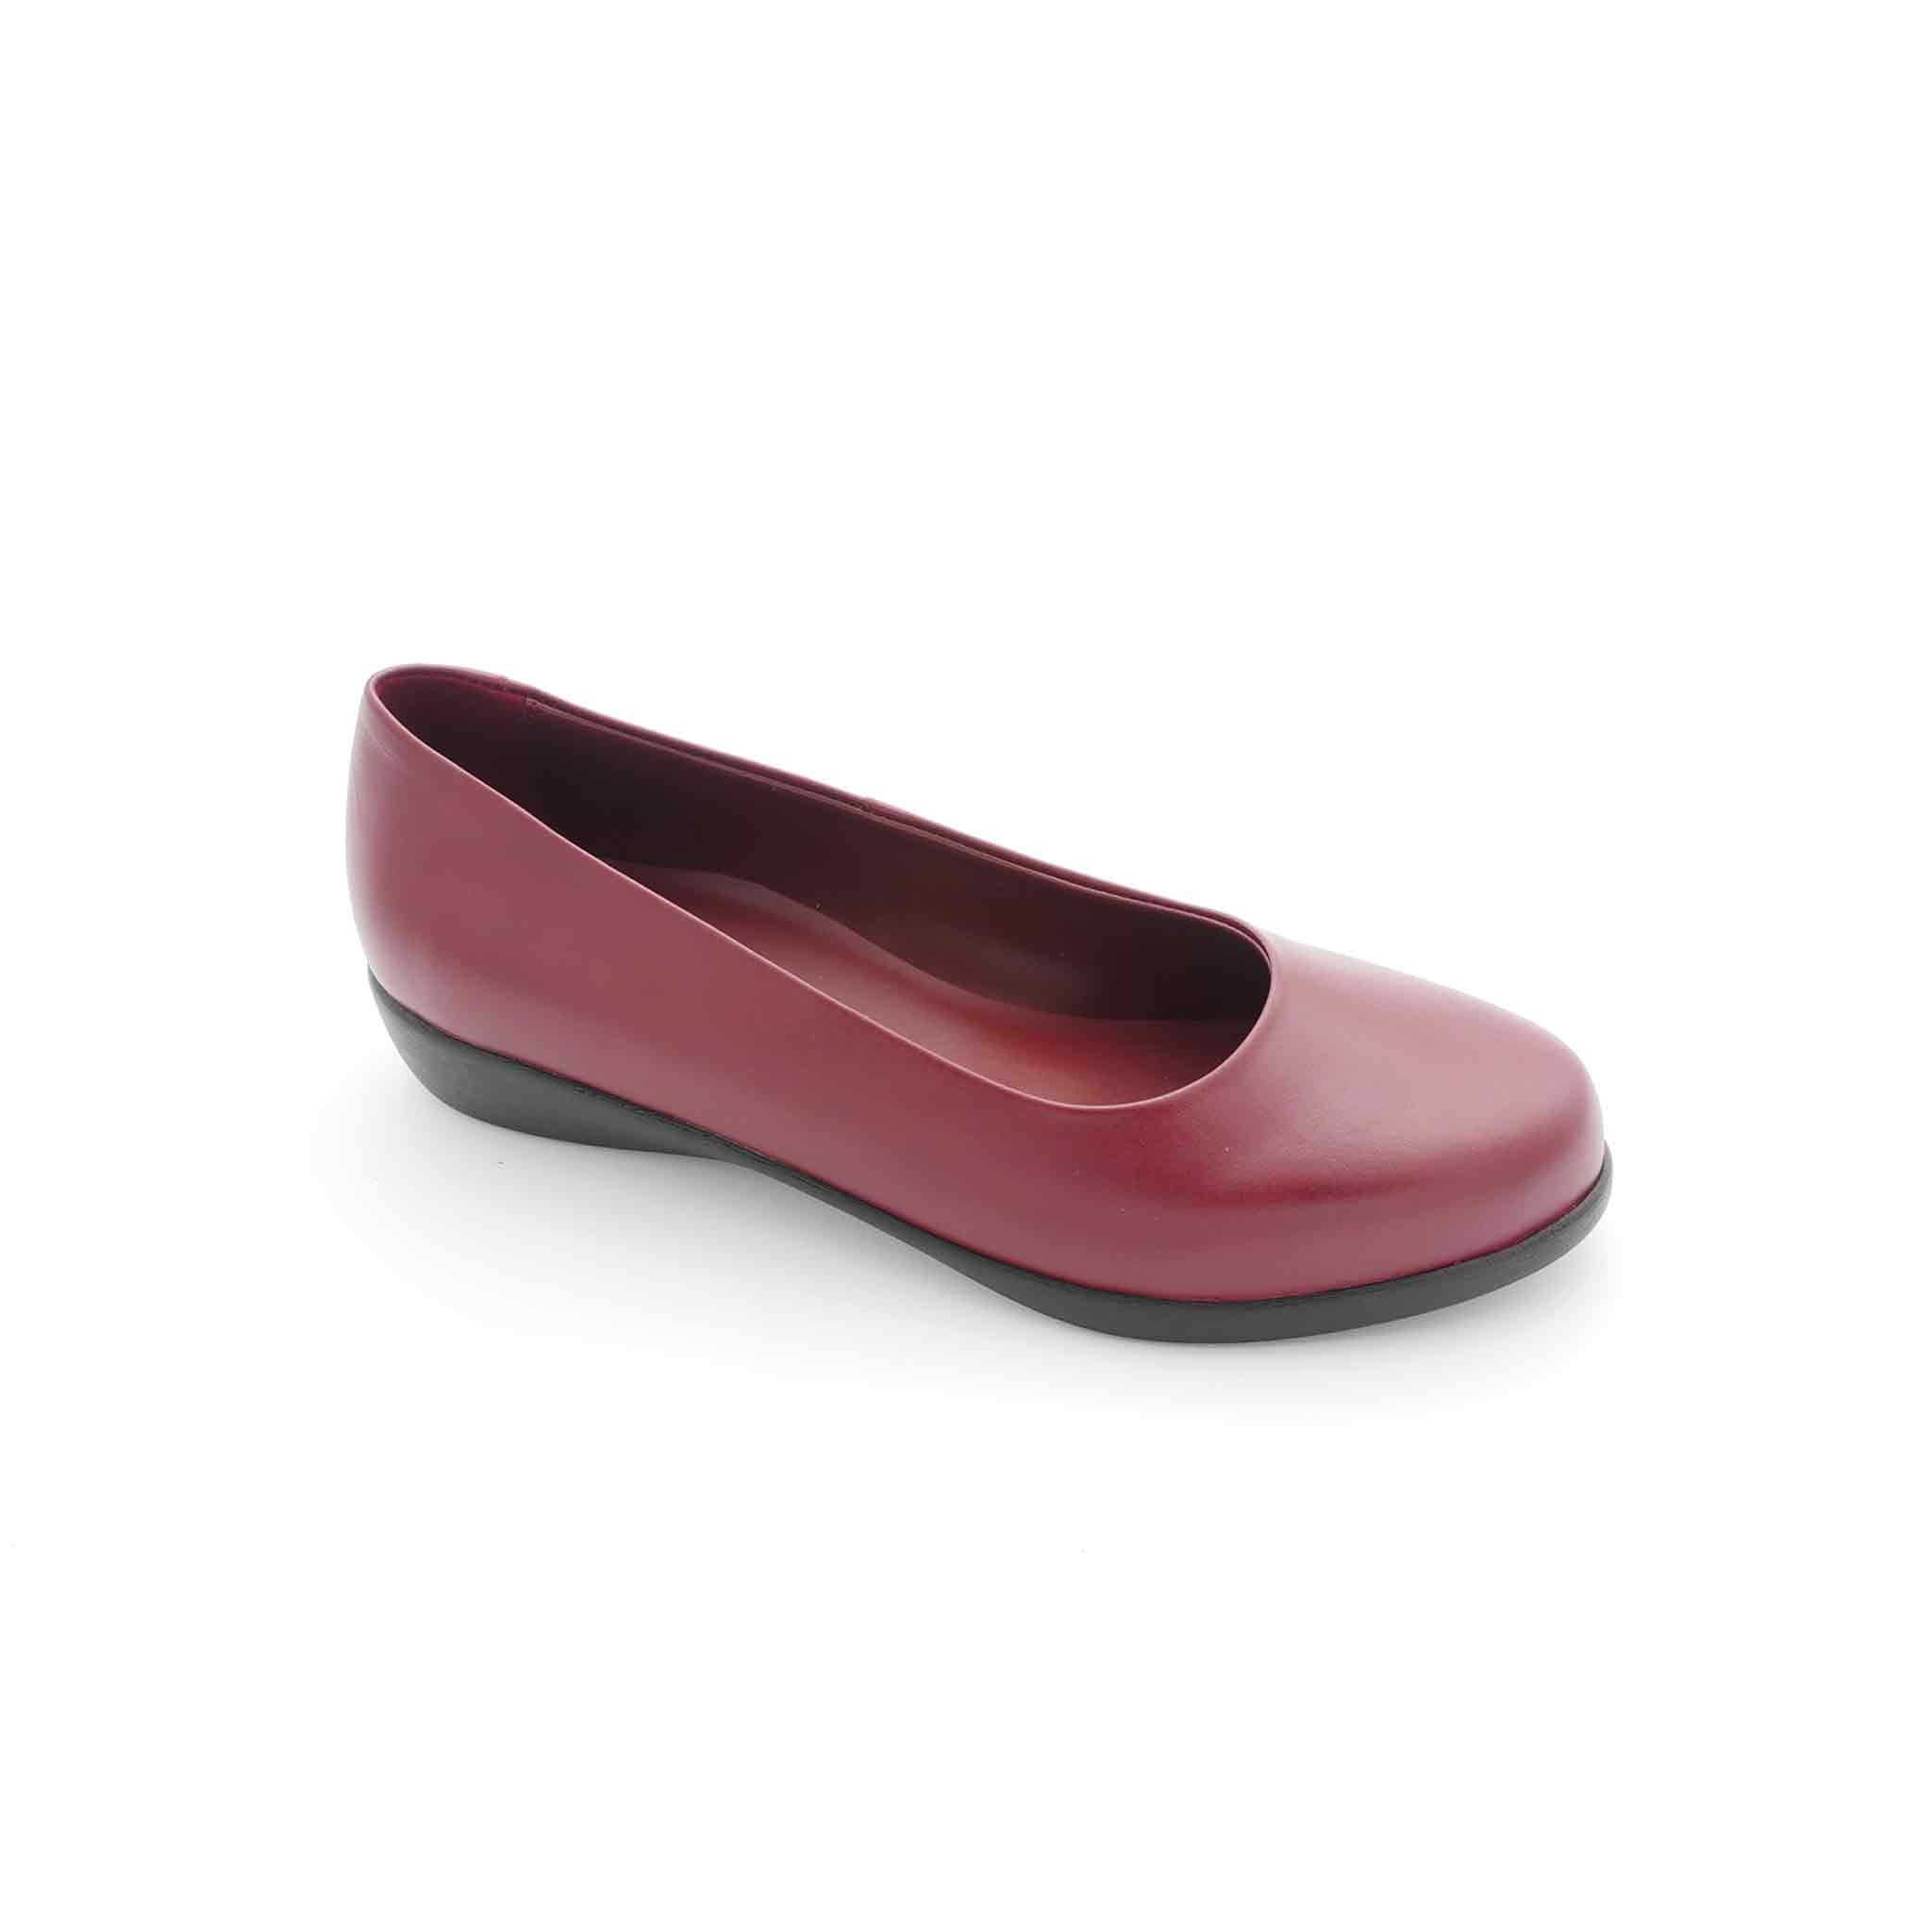 Green Cross Women's Shoe – Happy Feet Shoes